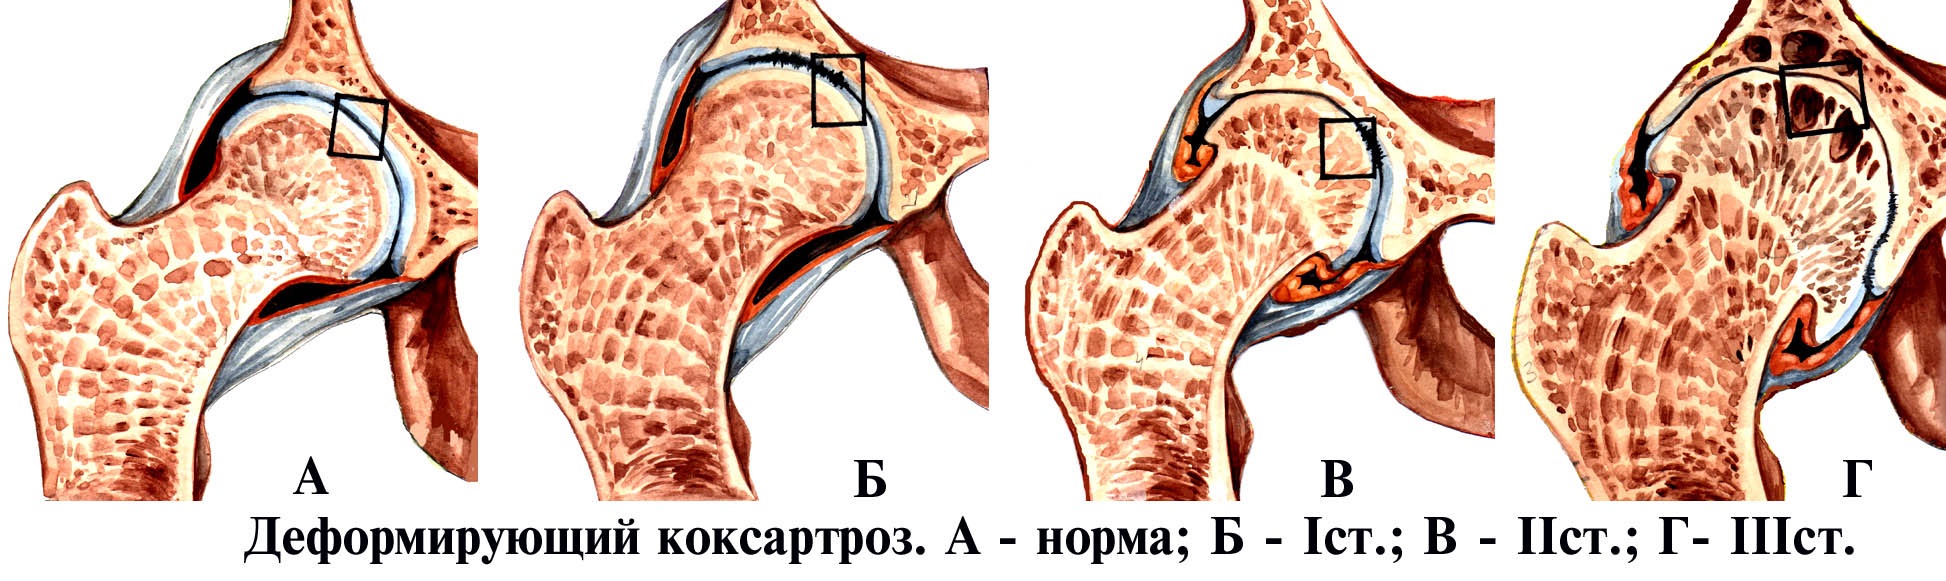 Деформирующий остеоартроз (ДОА) тазобедренного сустава 2 степени: что это такое и как лечить